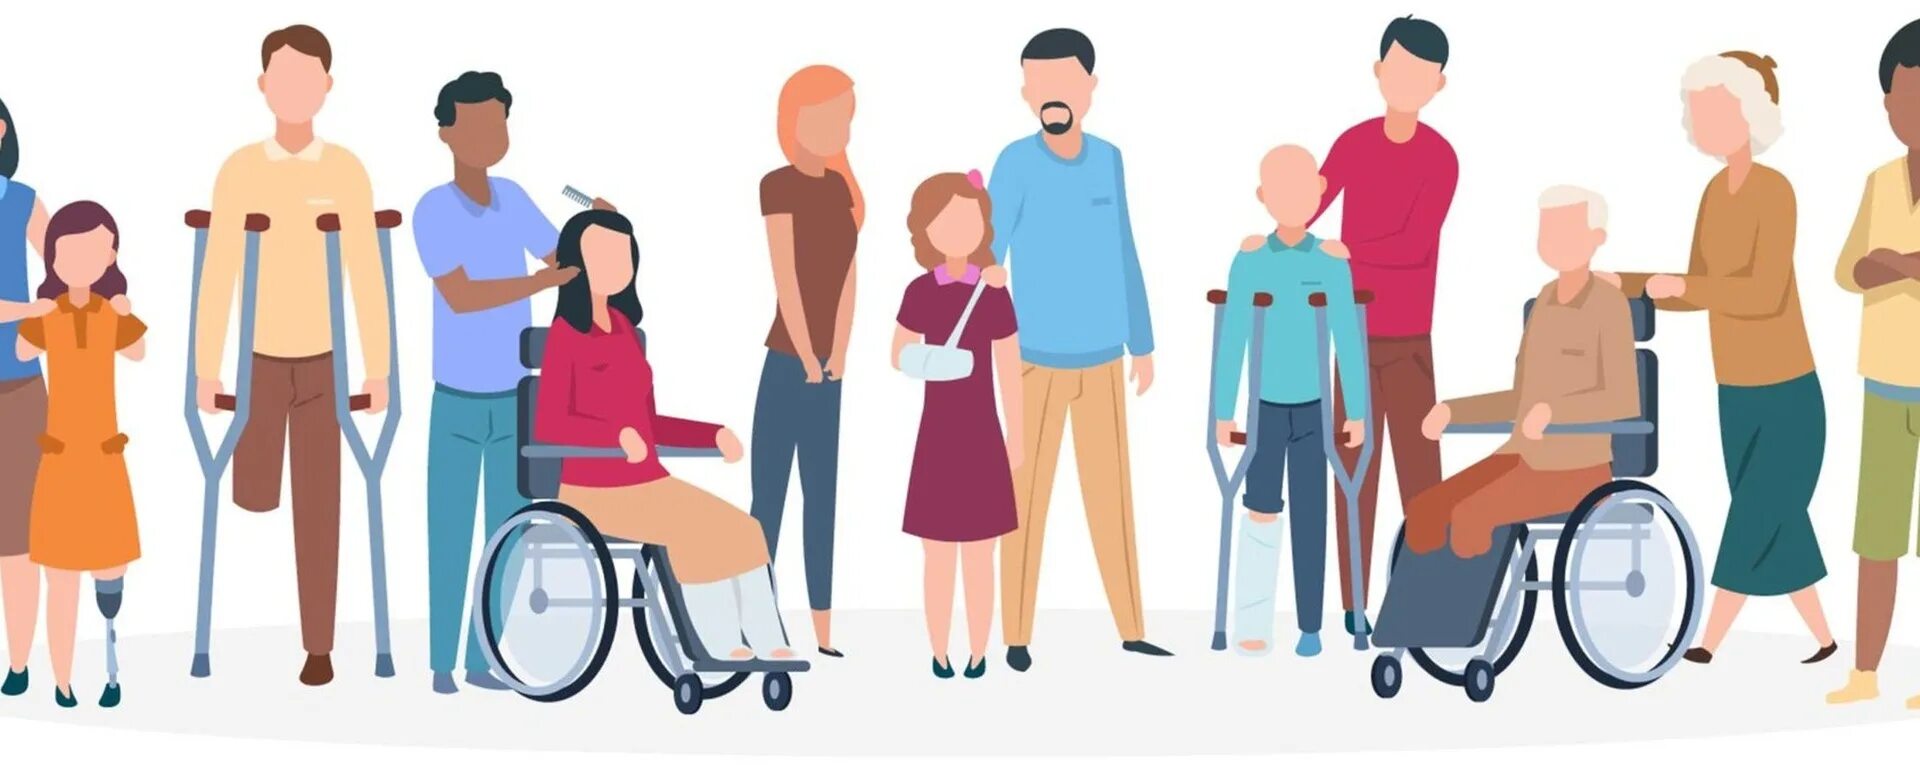 В семье инвалид 1 группы. Люди с ограниченными возможностями. Социальная защита инвалидов. Социальные группы инвалидов. Общение с людьми с ограниченными возможностями.